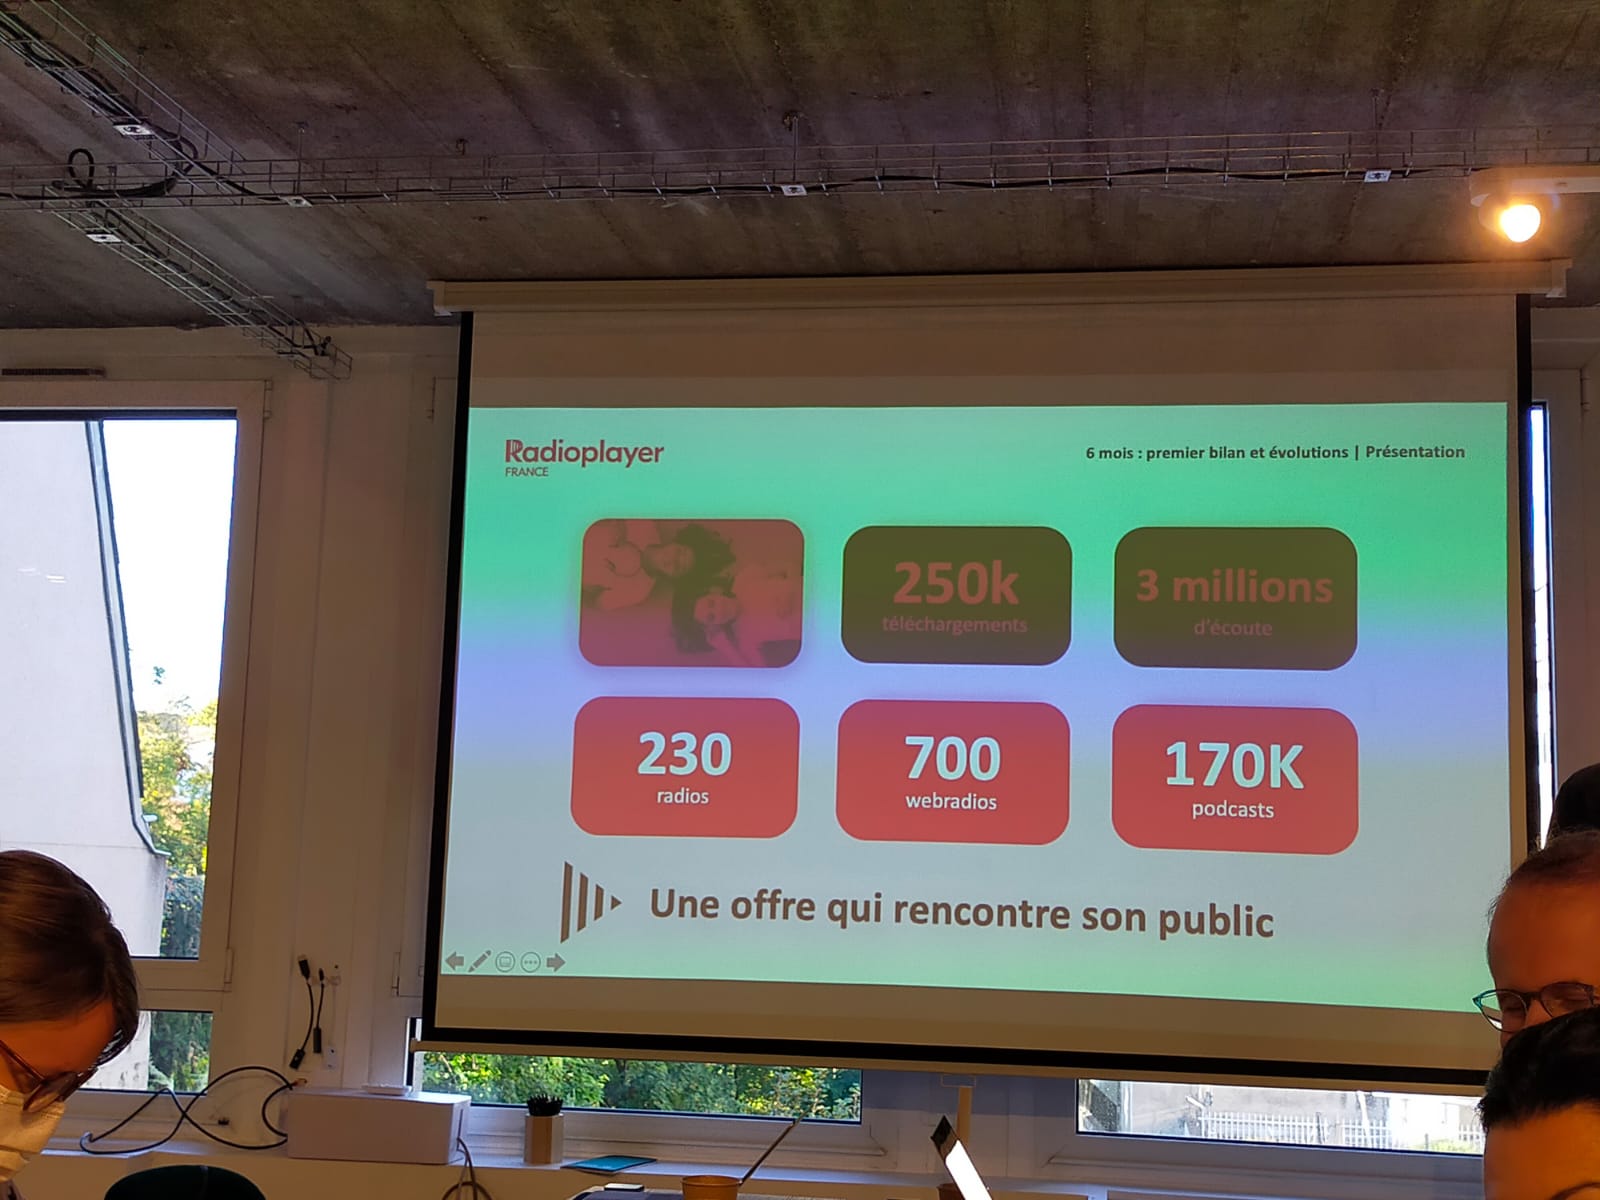 Radioplayer France fête ses 6 mois avec 250 000 téléchargements